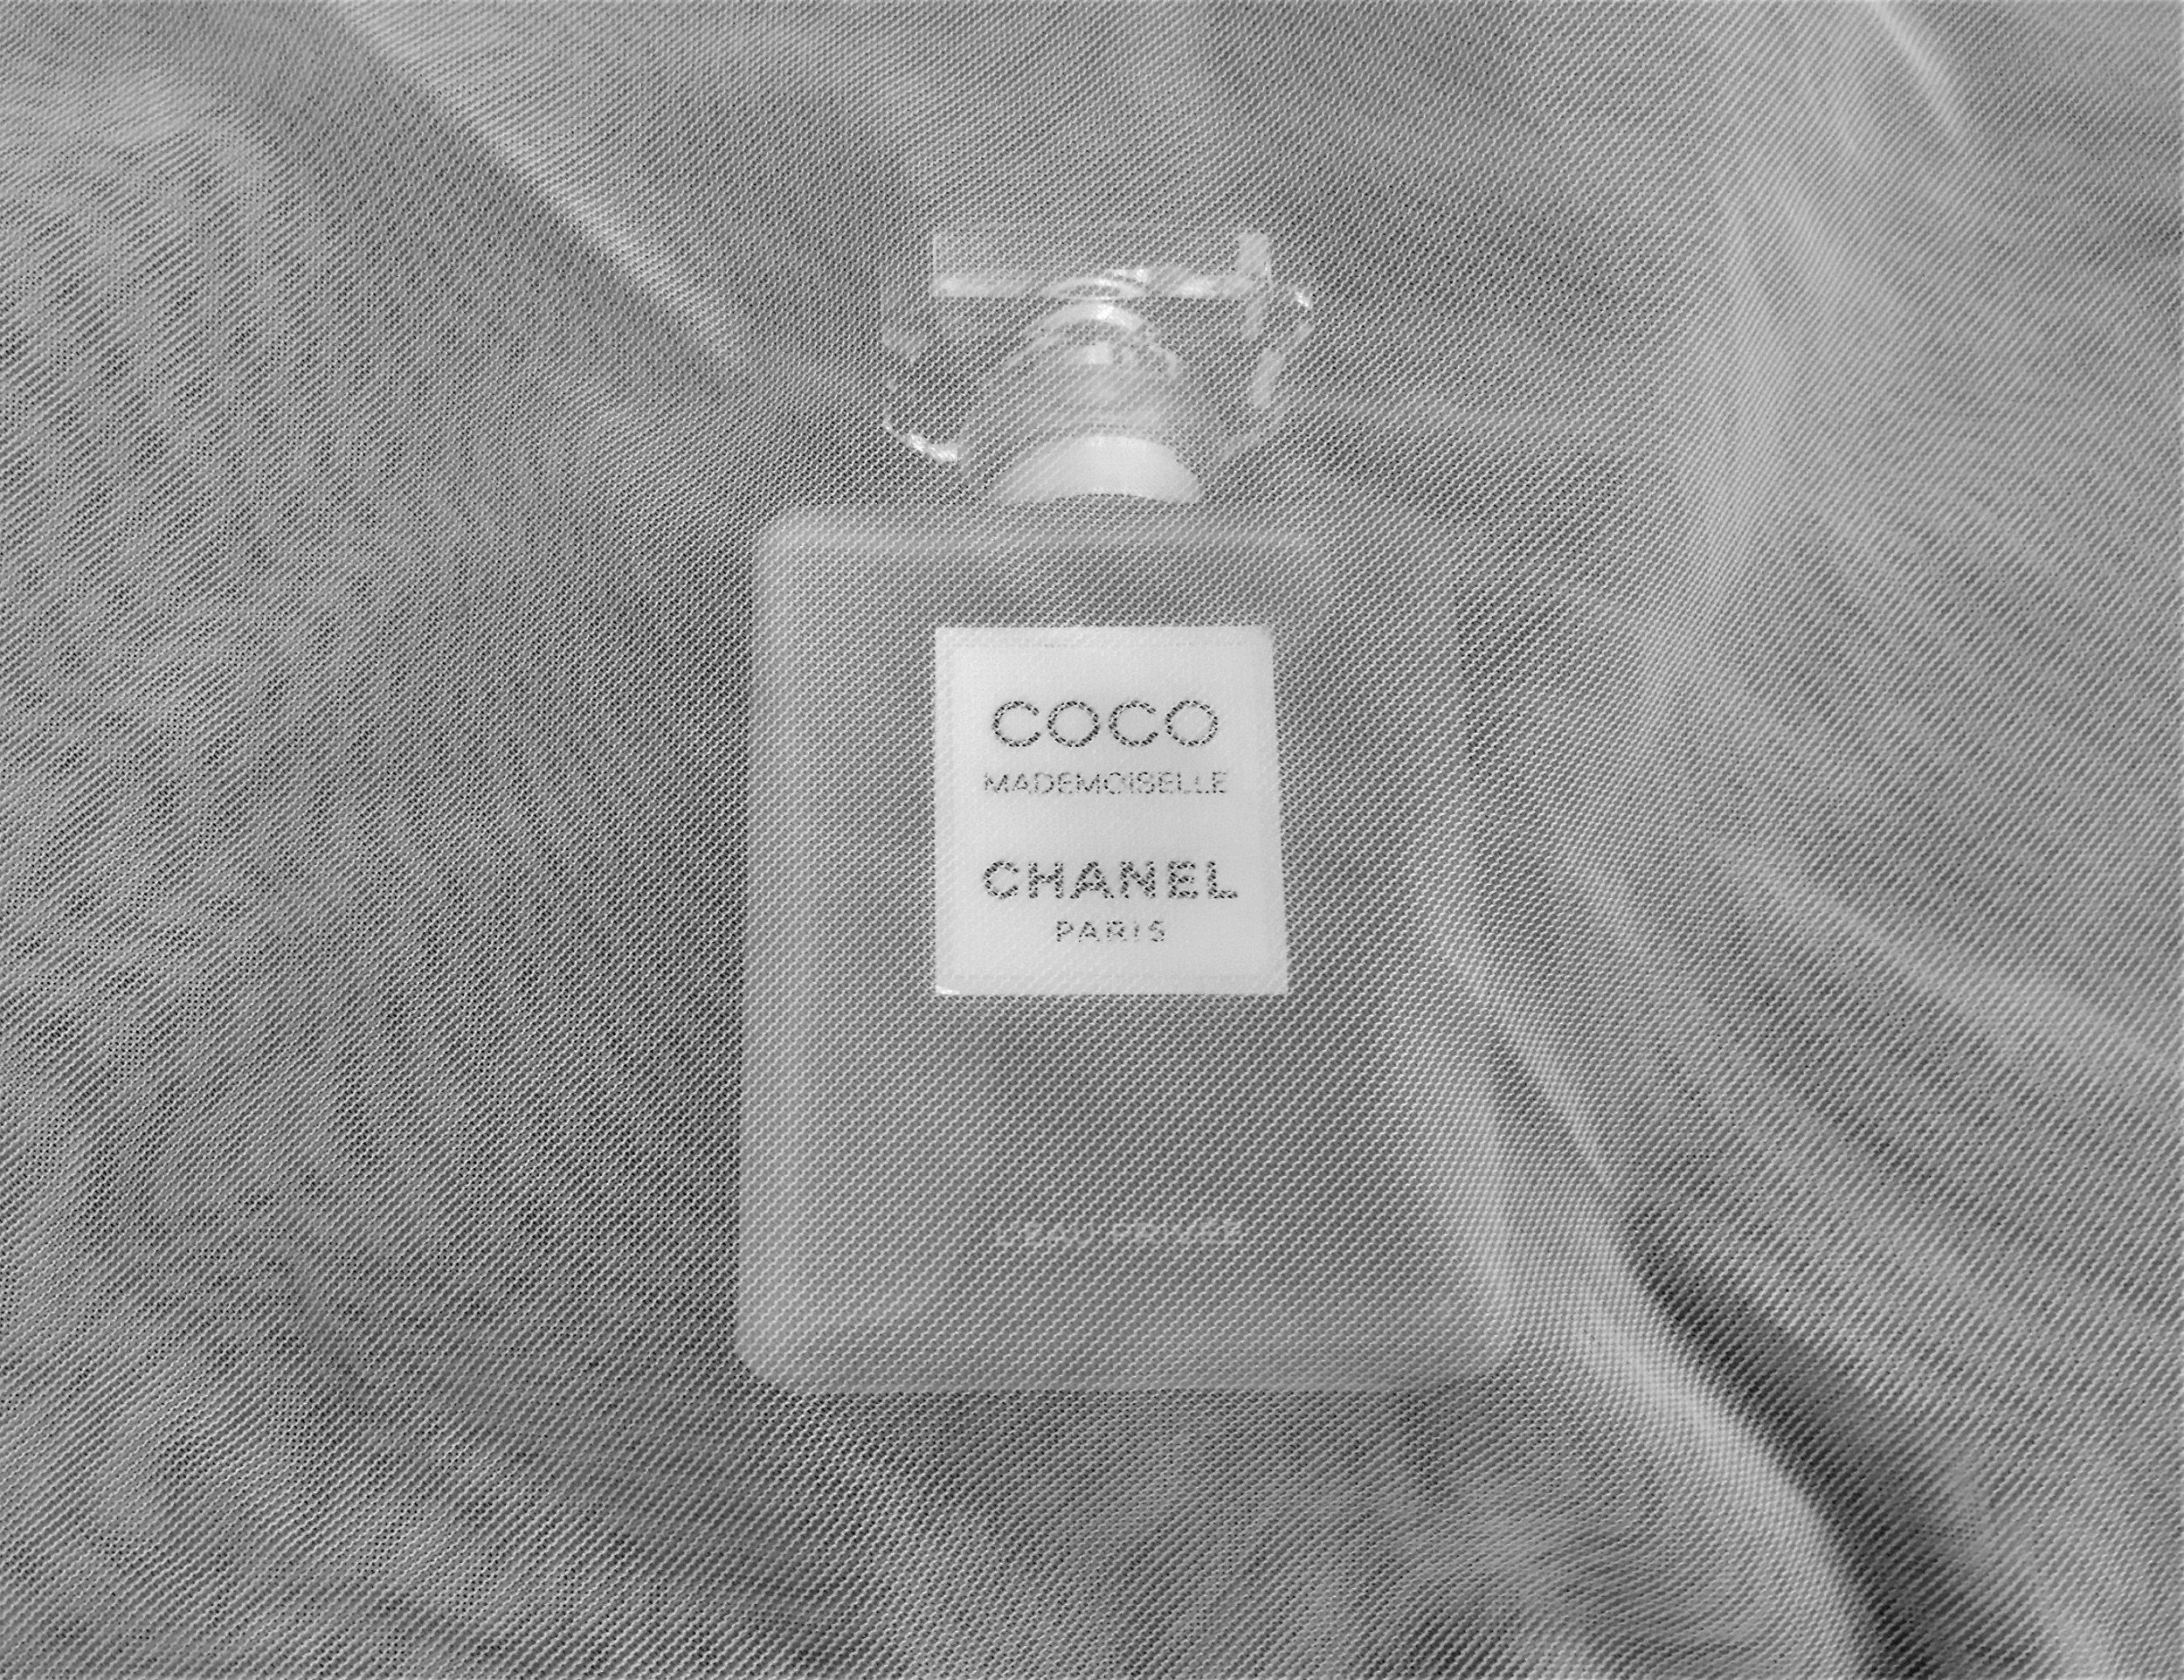 Chanel Coco Mademoiselle L'Eau Privée Review: A Beautiful Blur